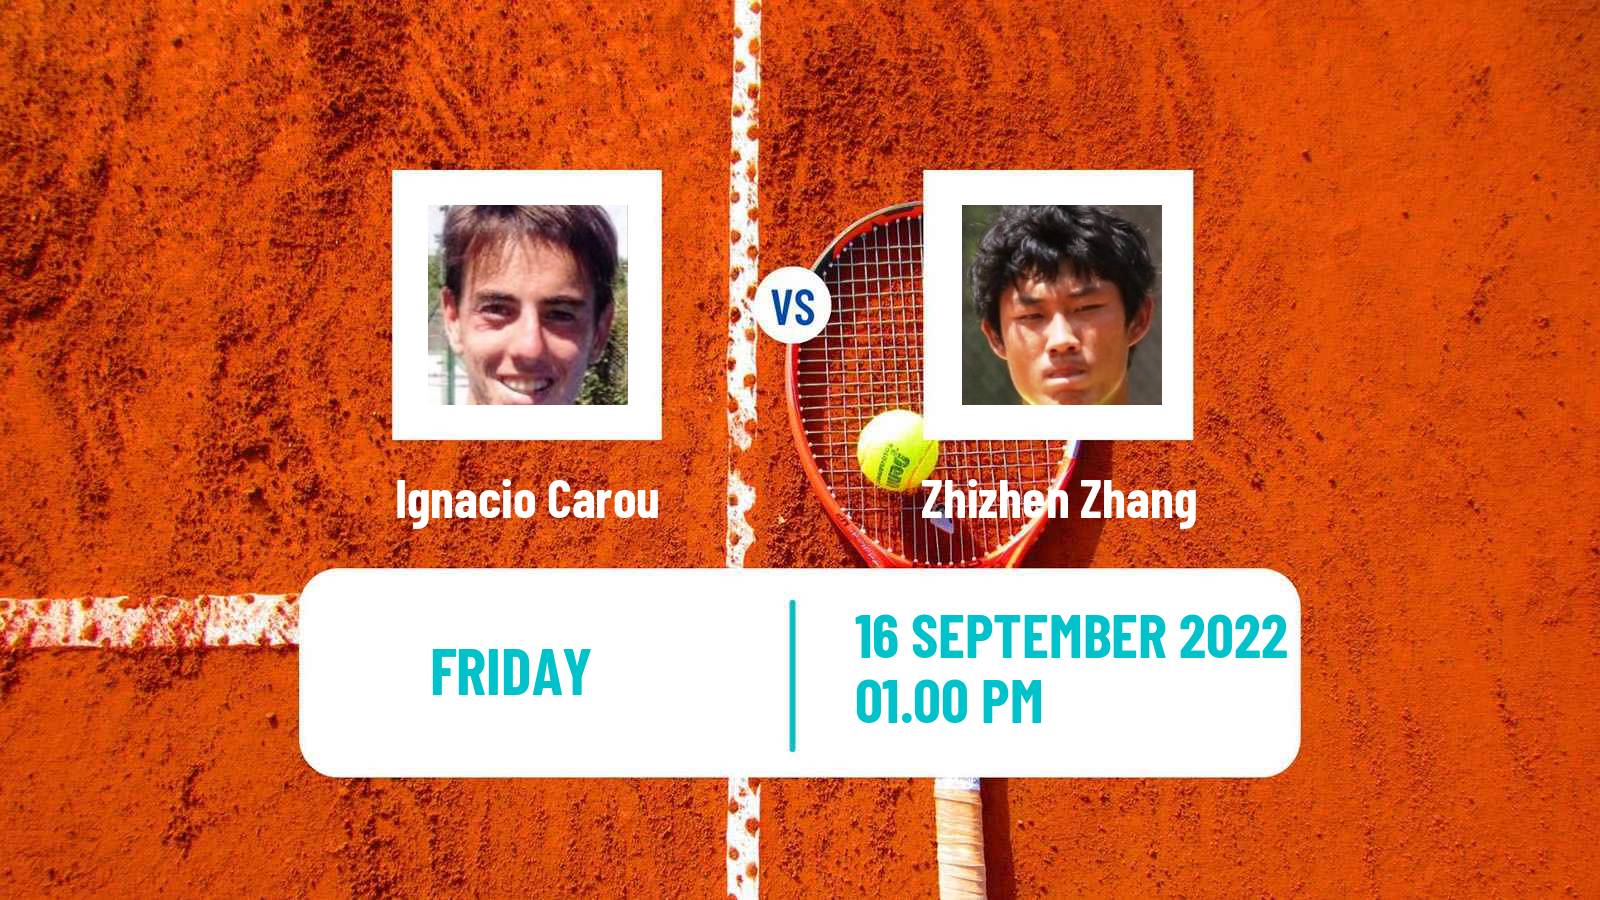 Tennis Davis Cup World Group II Ignacio Carou - Zhizhen Zhang